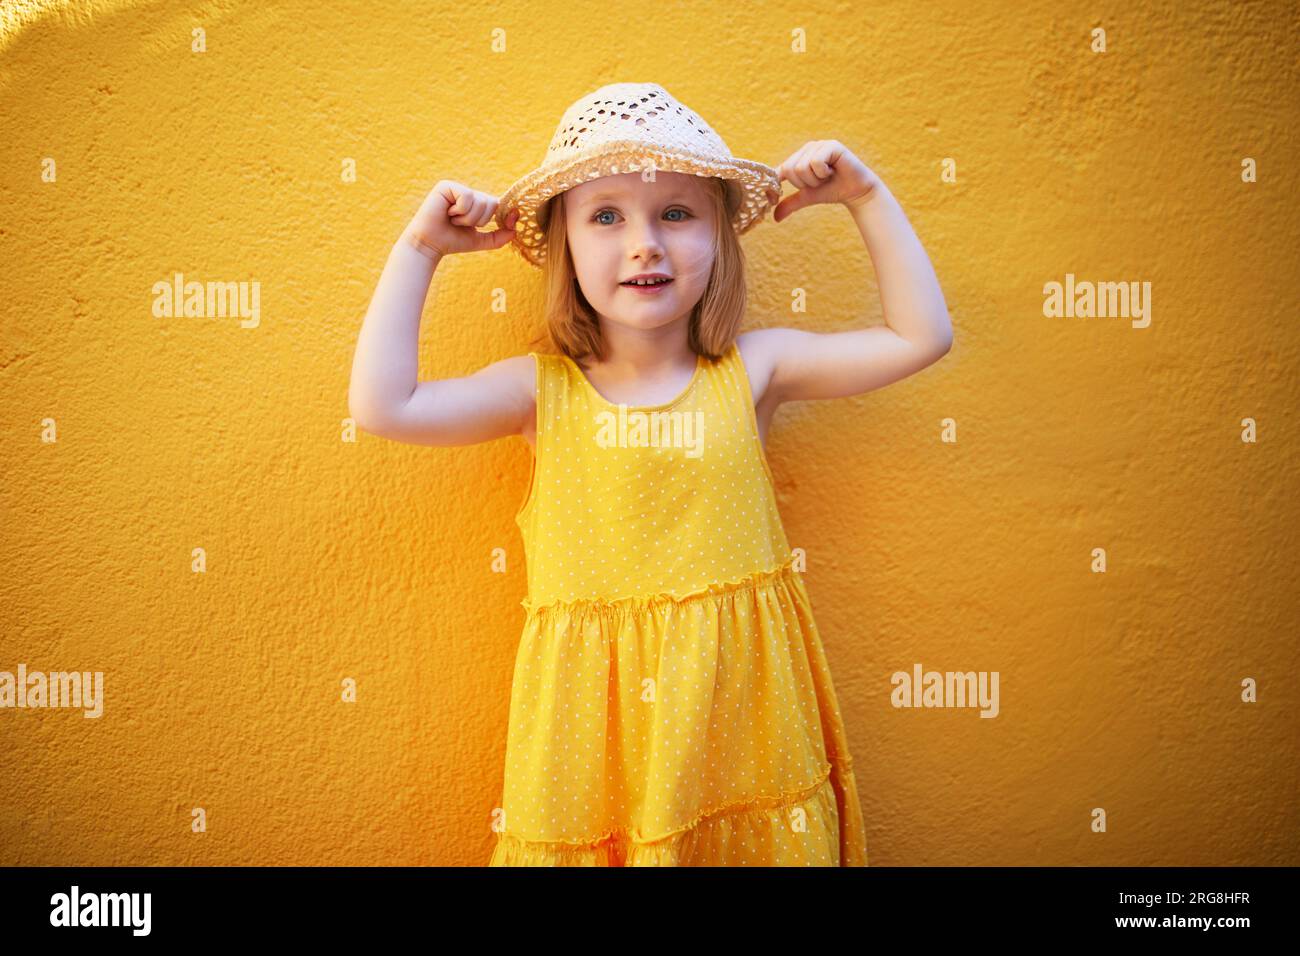 Allegra bambina di tre anni con vestito giallo e cappello di paglia che posa contro il muro giallo. Bambino felice in un giorno d'estate. Attività estive o vacanze Foto Stock